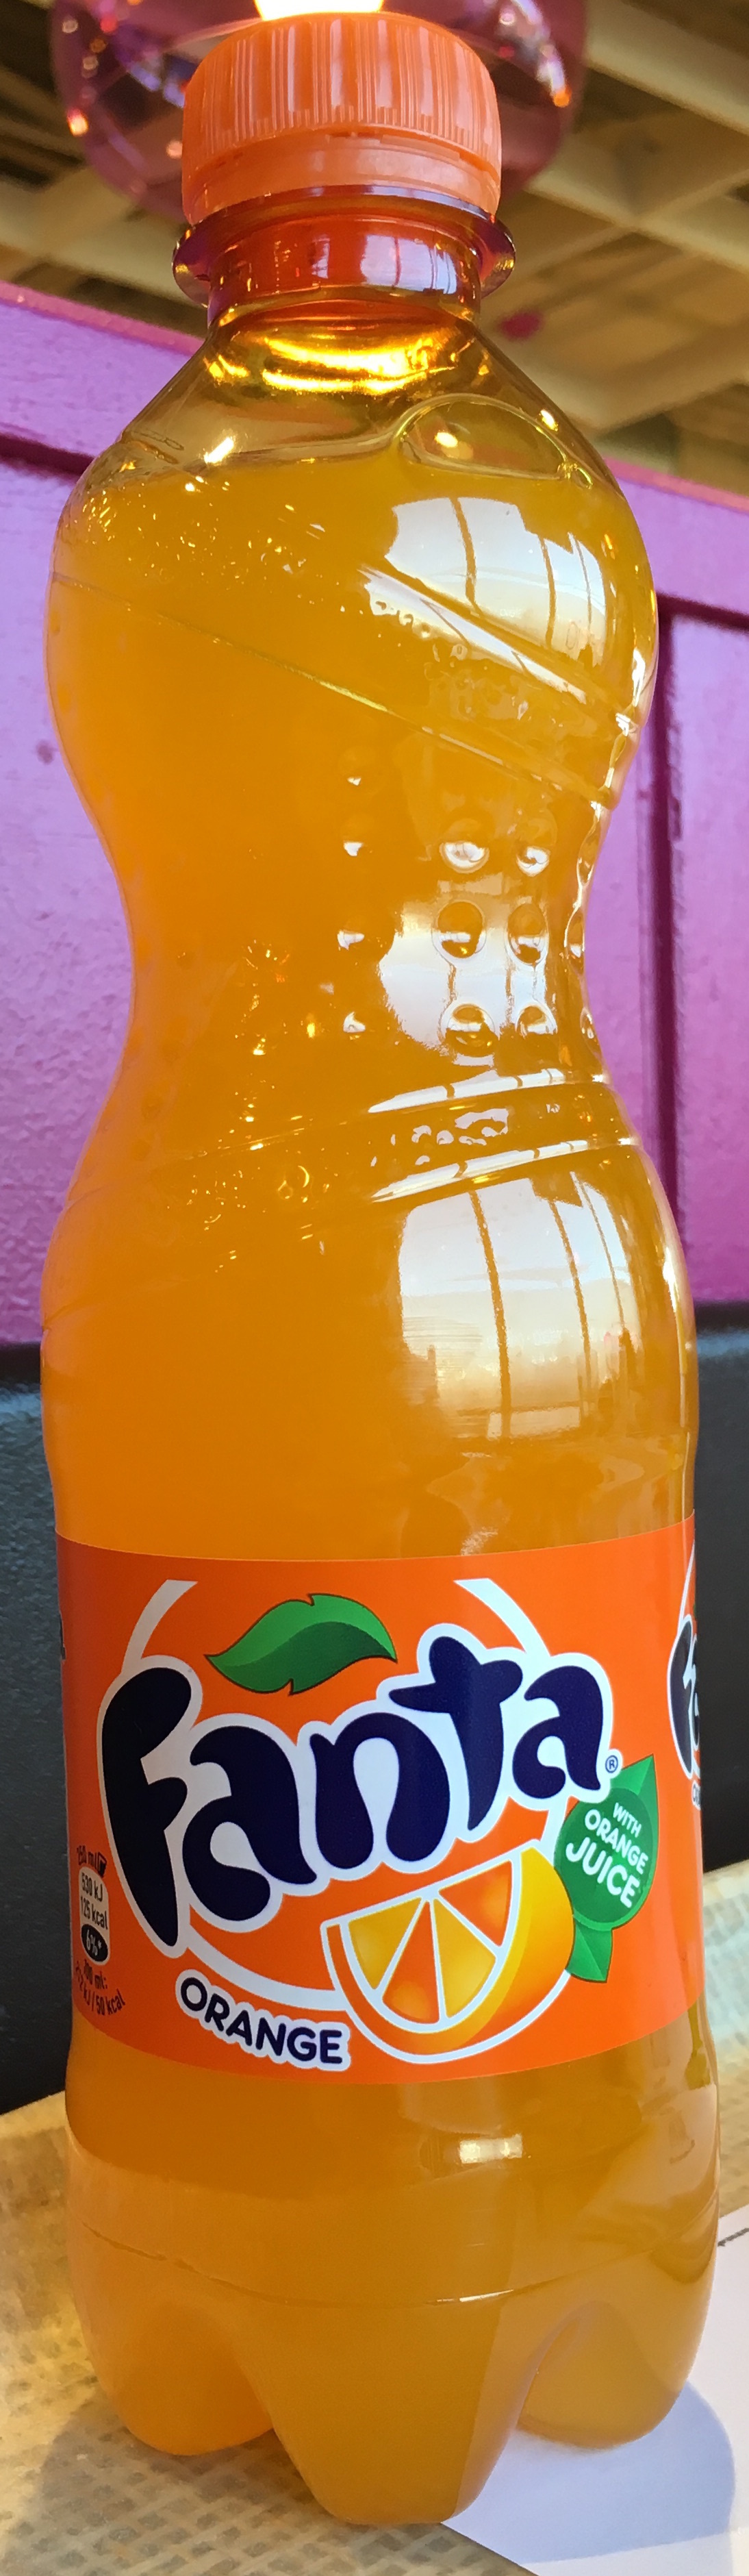 Orange - Produkt - fr